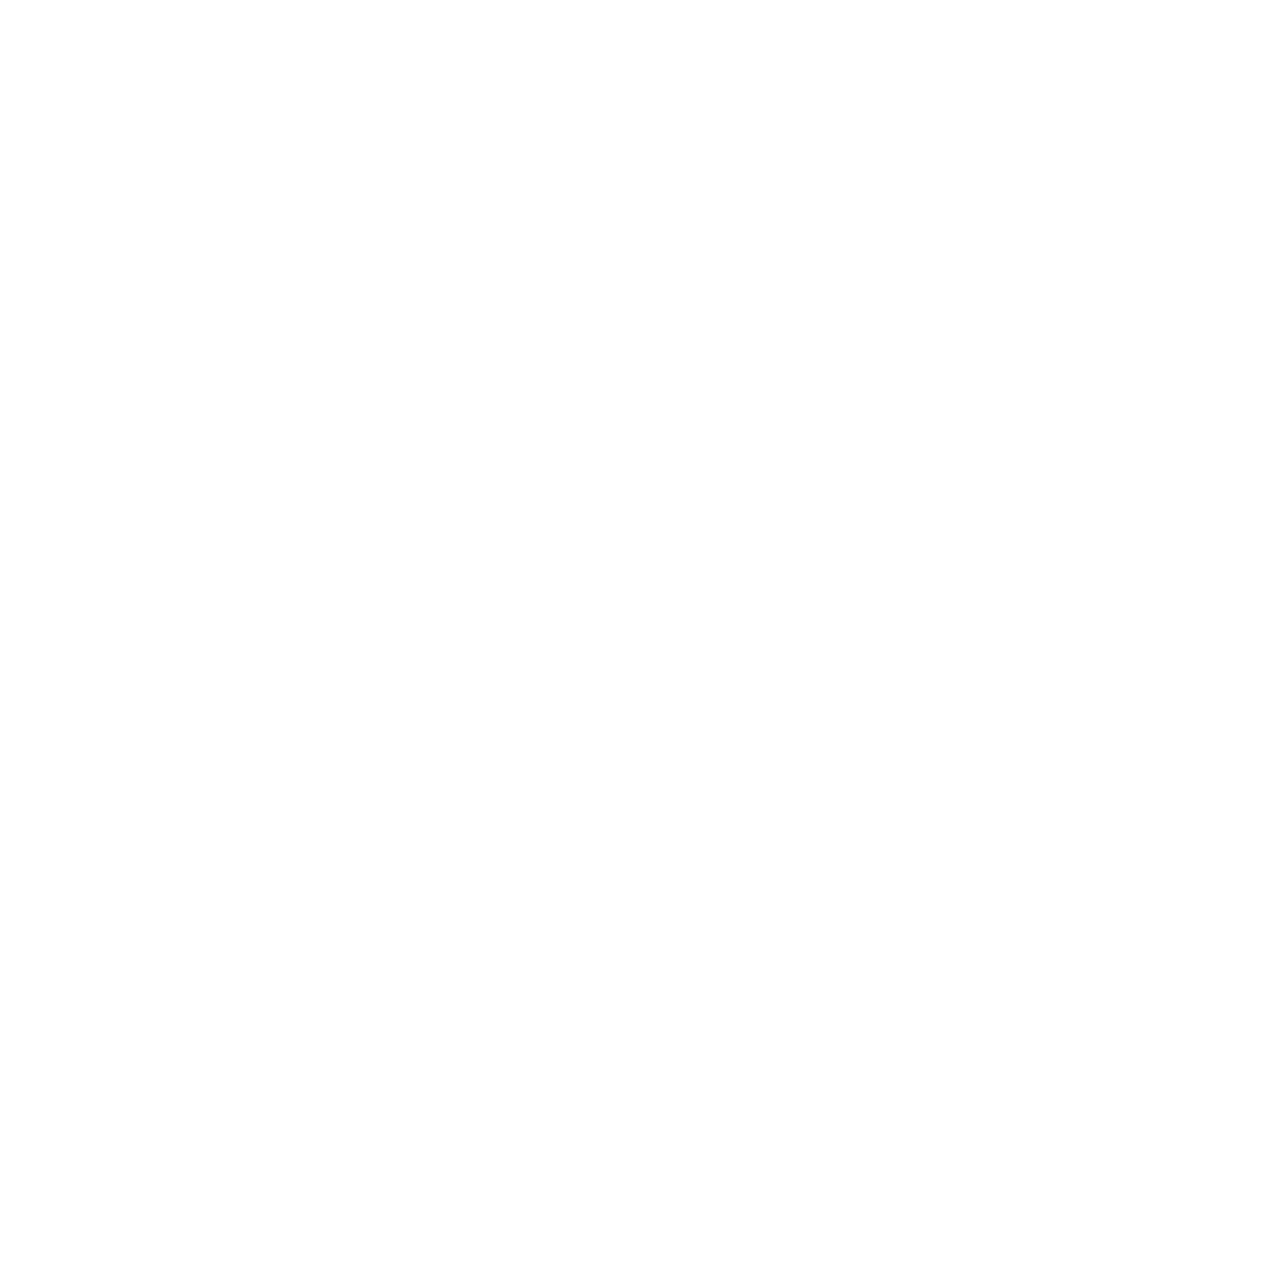 انجمن علمی مهندسی مکانیک دانشگاه بین المللی امام خمینی